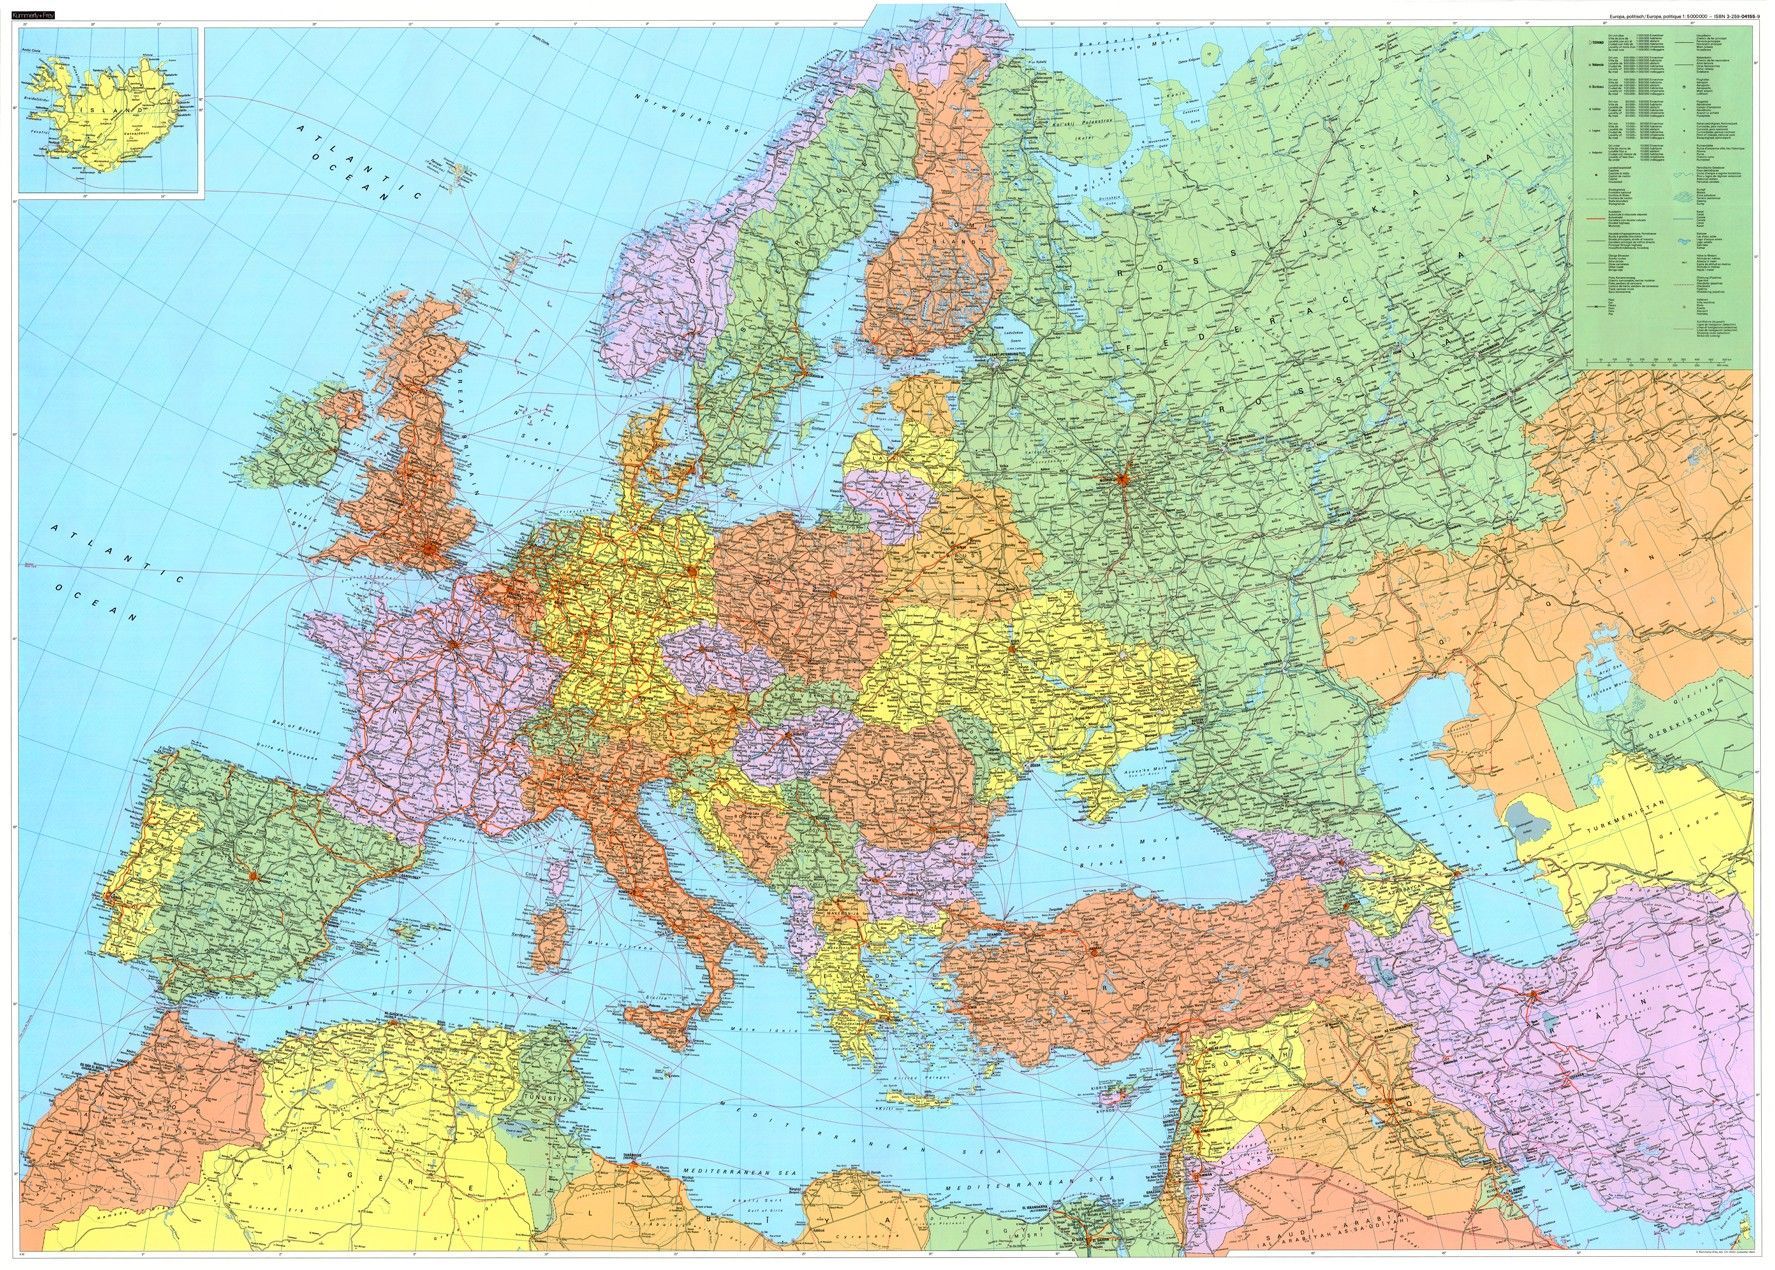 Europakaart met lucht en zeehavens